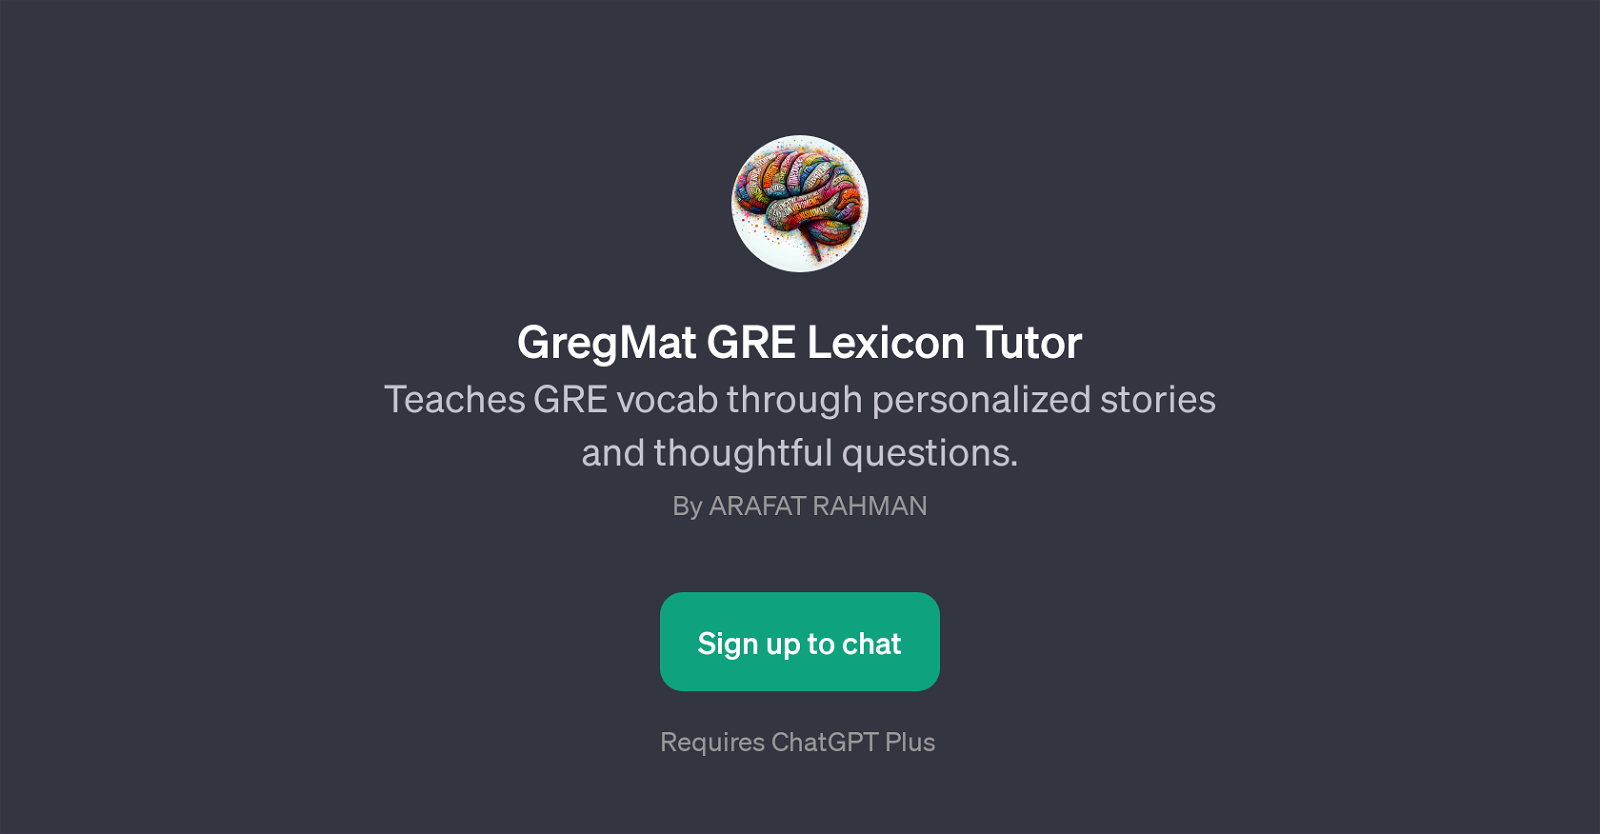 GregMat GRE Lexicon Tutor website